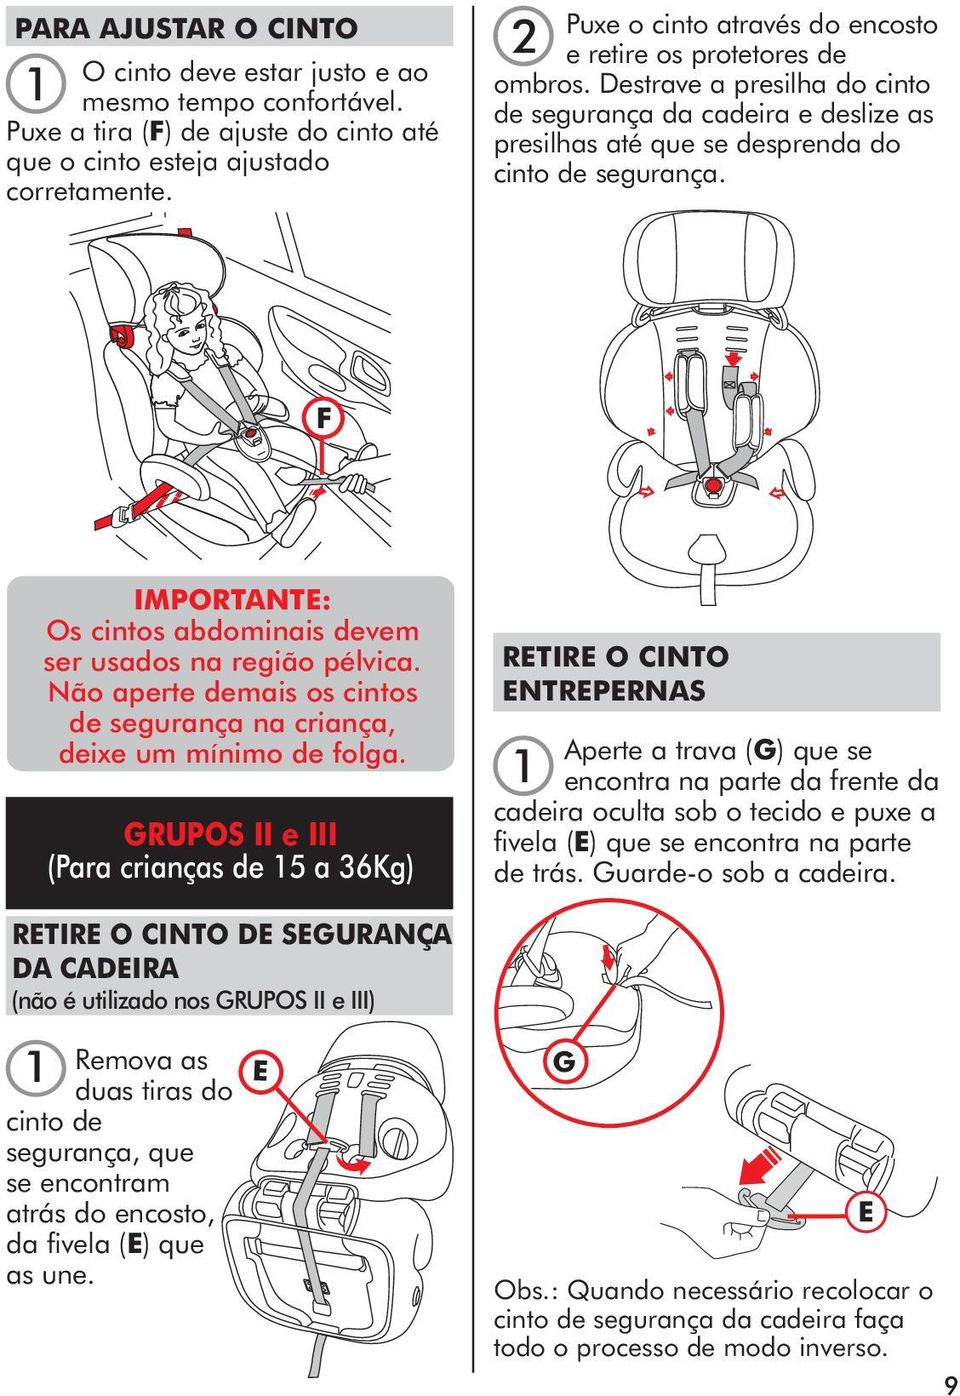 IMPORTANTE: Os cintos abdominais devem ser usados na região pélvica. Não aperte demais os cintos de segurança na criança, deixe um mínimo de folga.